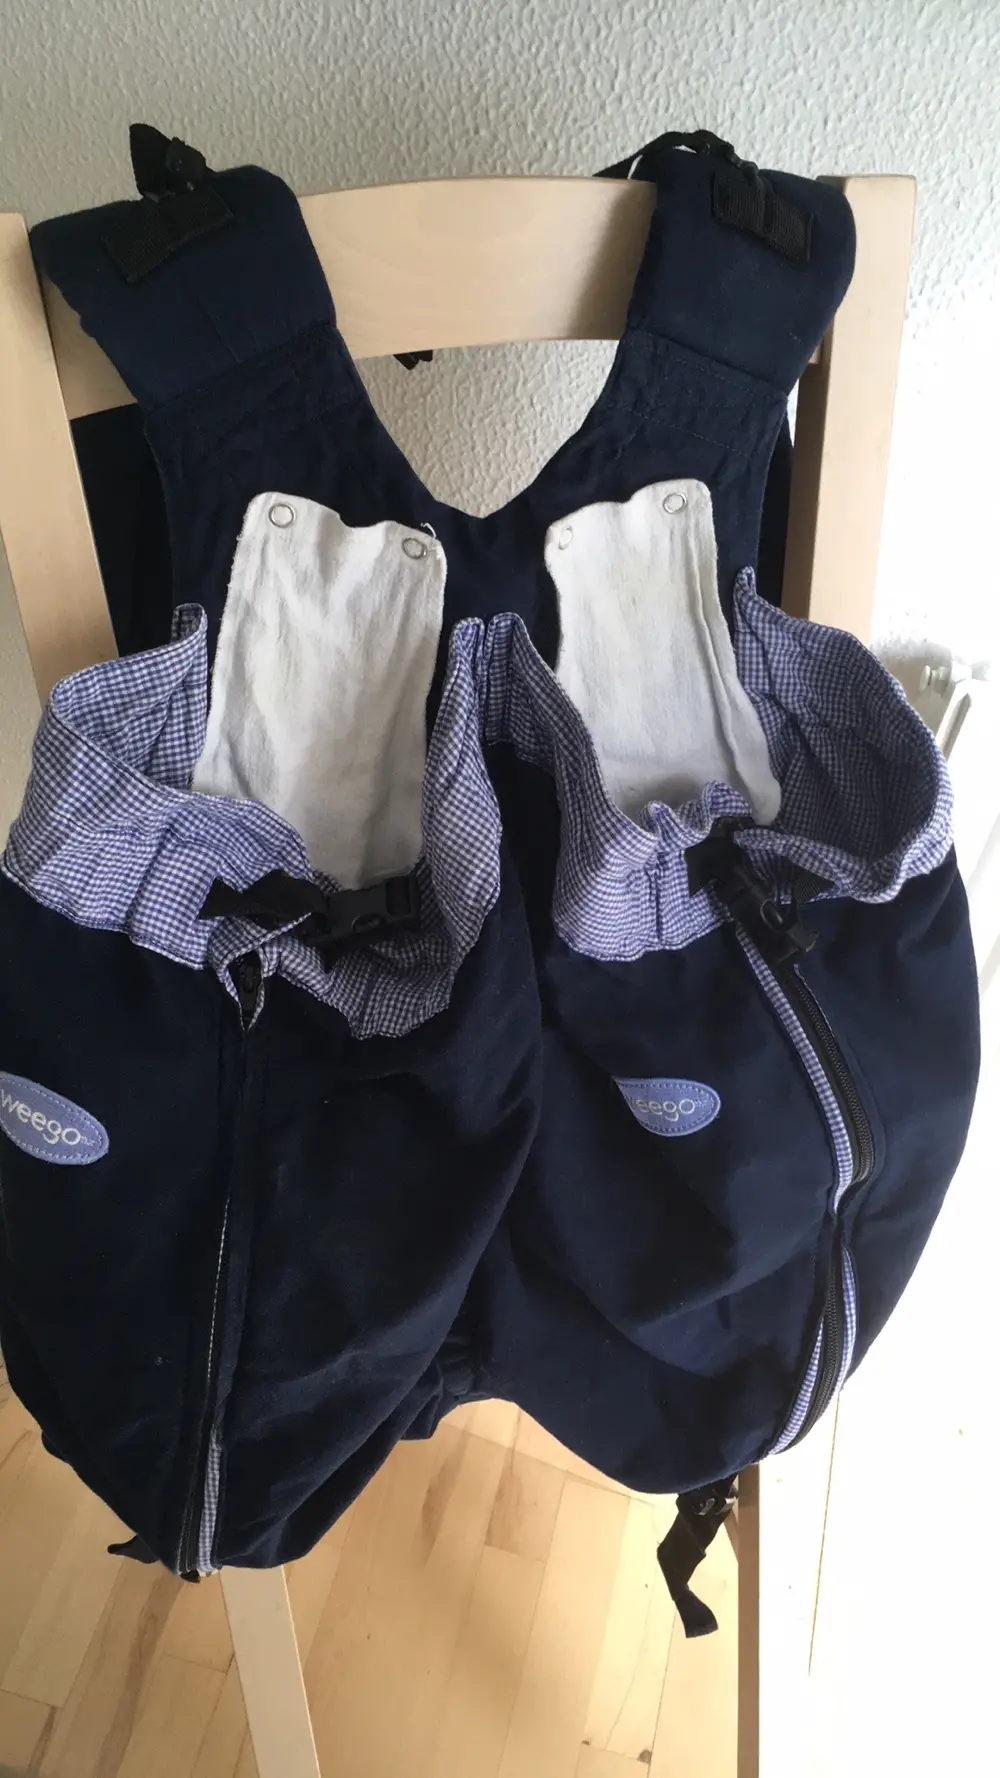 Køb Weego Tvillinge bæresele af Sara på Reshopper Shop secondhand til børn, mor og